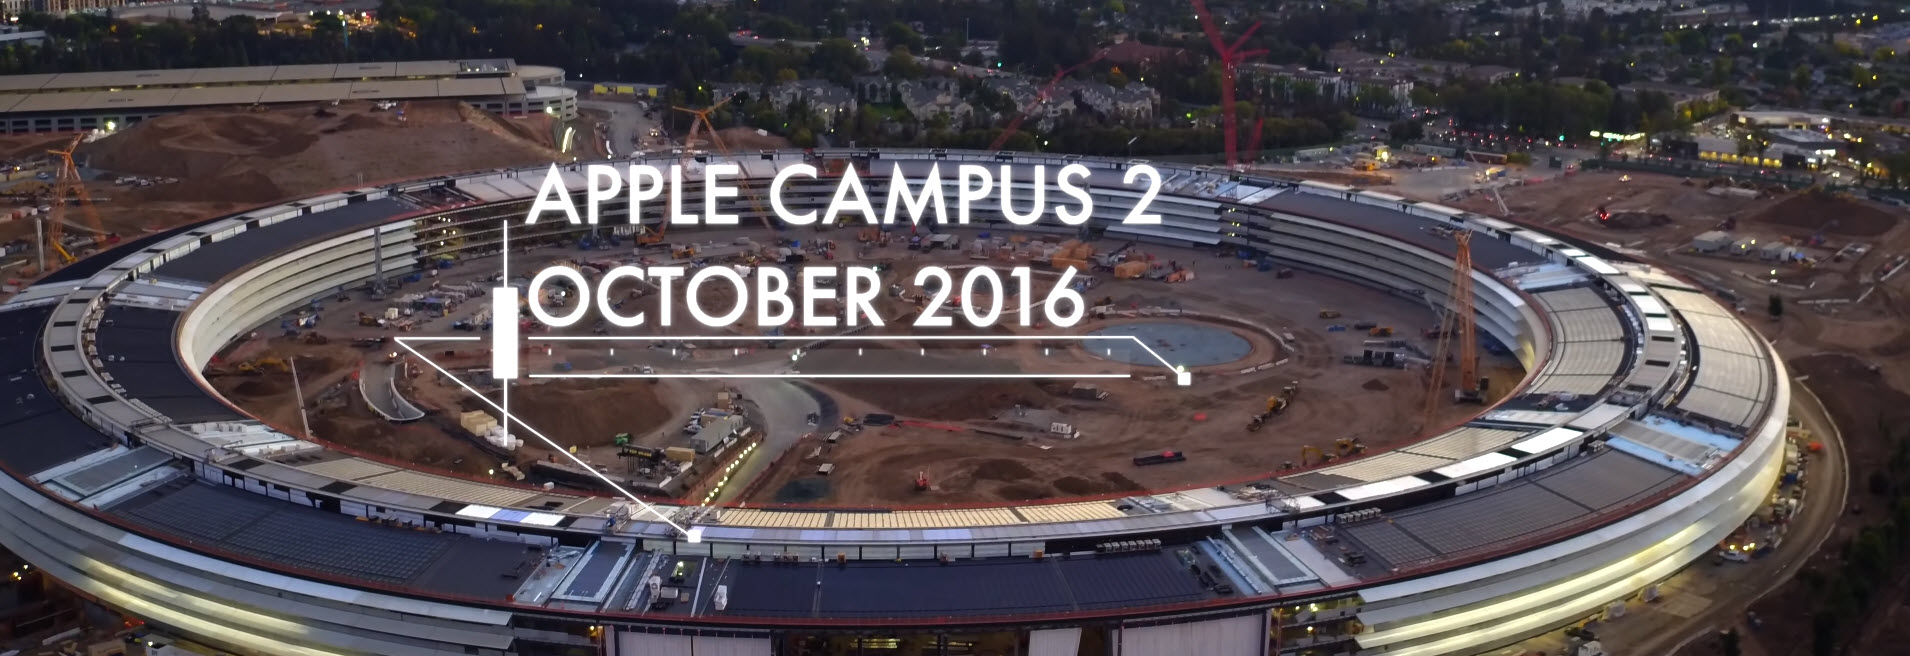 ชมความคืบหน้าล่าสุดของ ยานแม่ลำใหม่ Apple Campus 2 ประจำเดือนตุลาคม